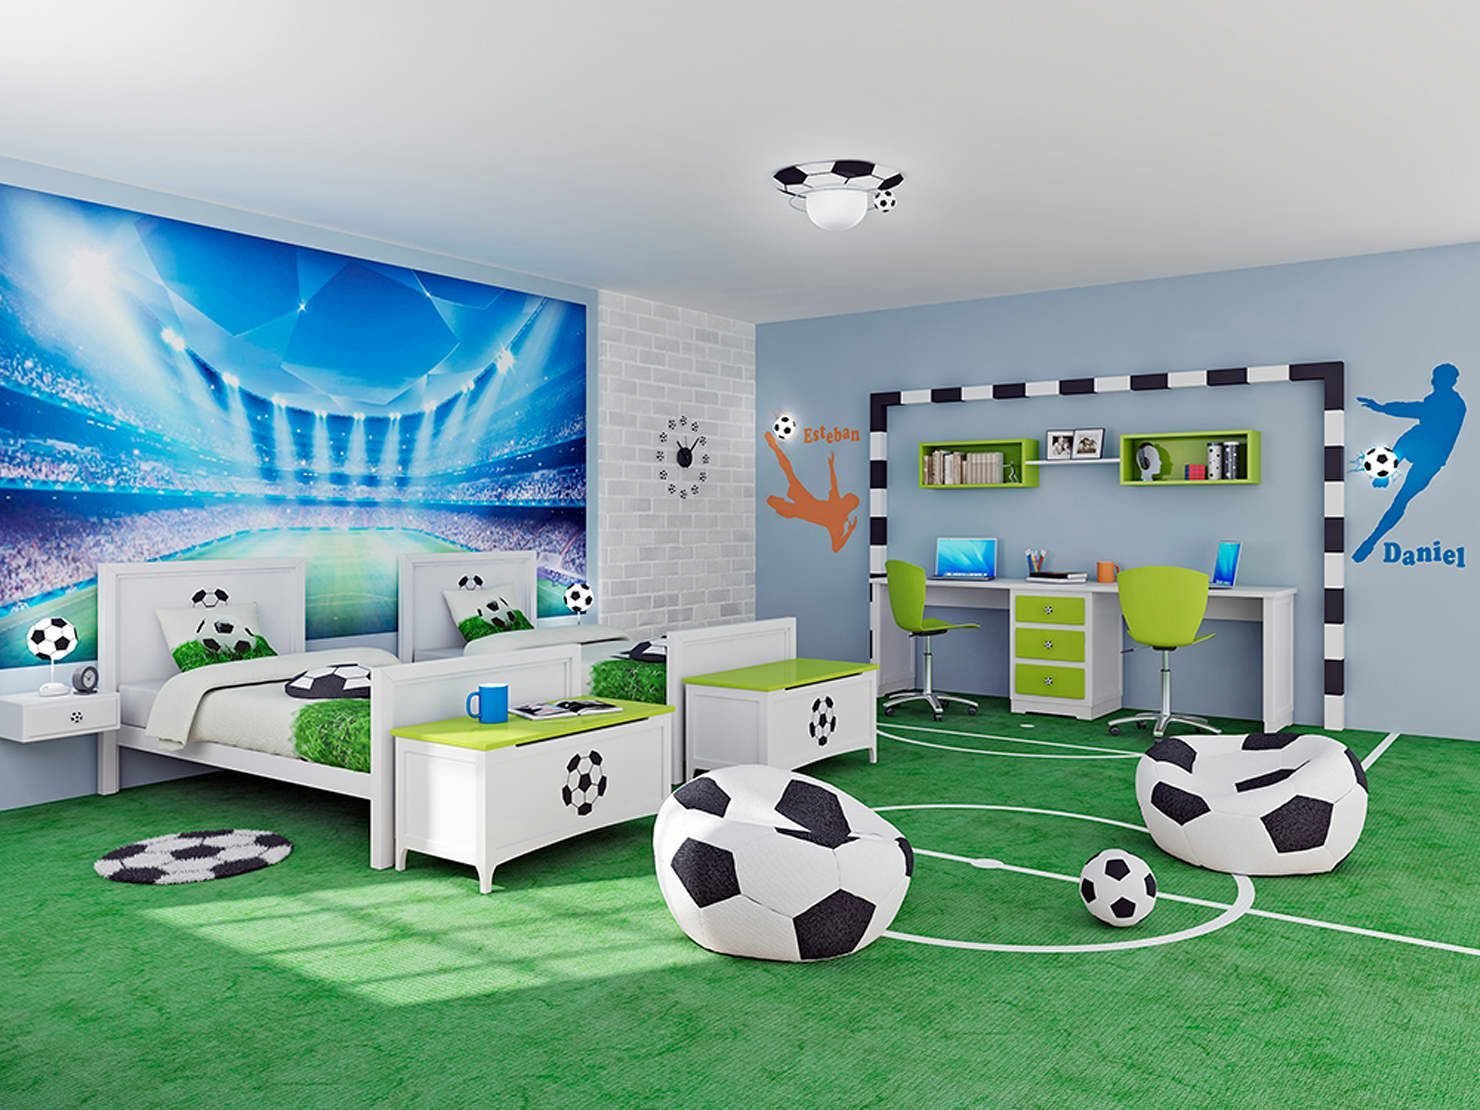 Дизайн интерьера детской комнаты фото.